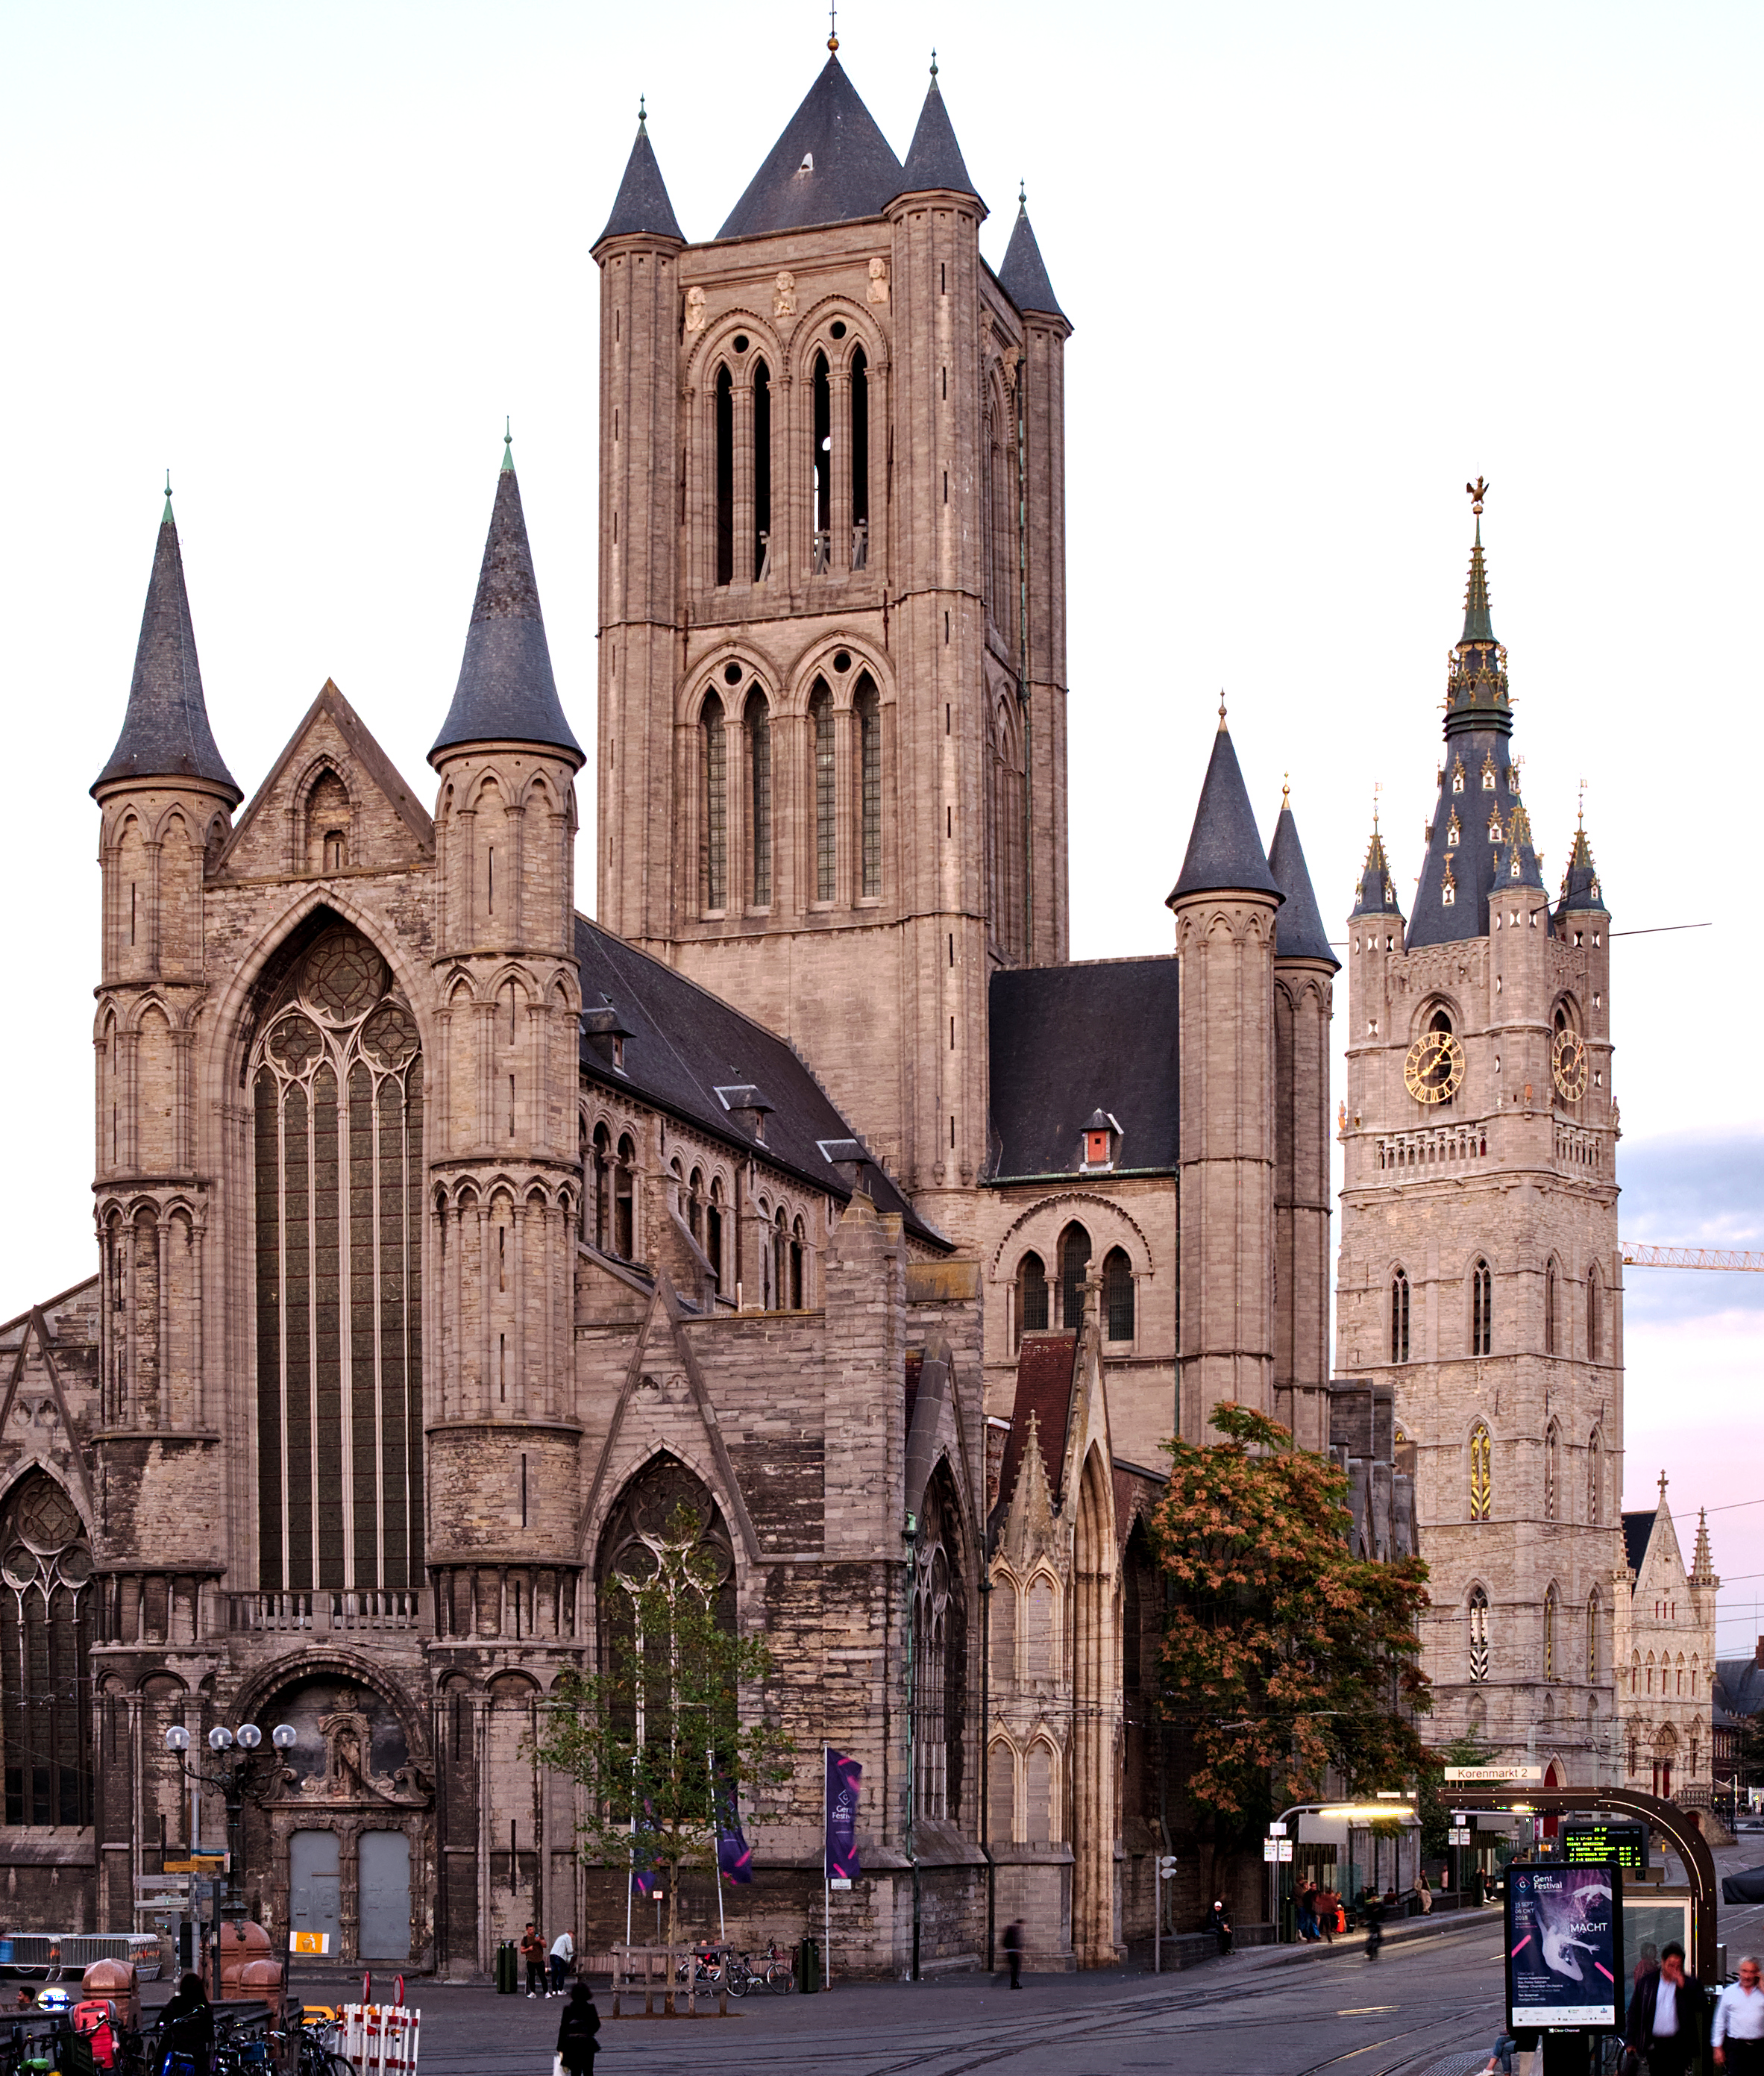 St Nicholas Church, Ghent